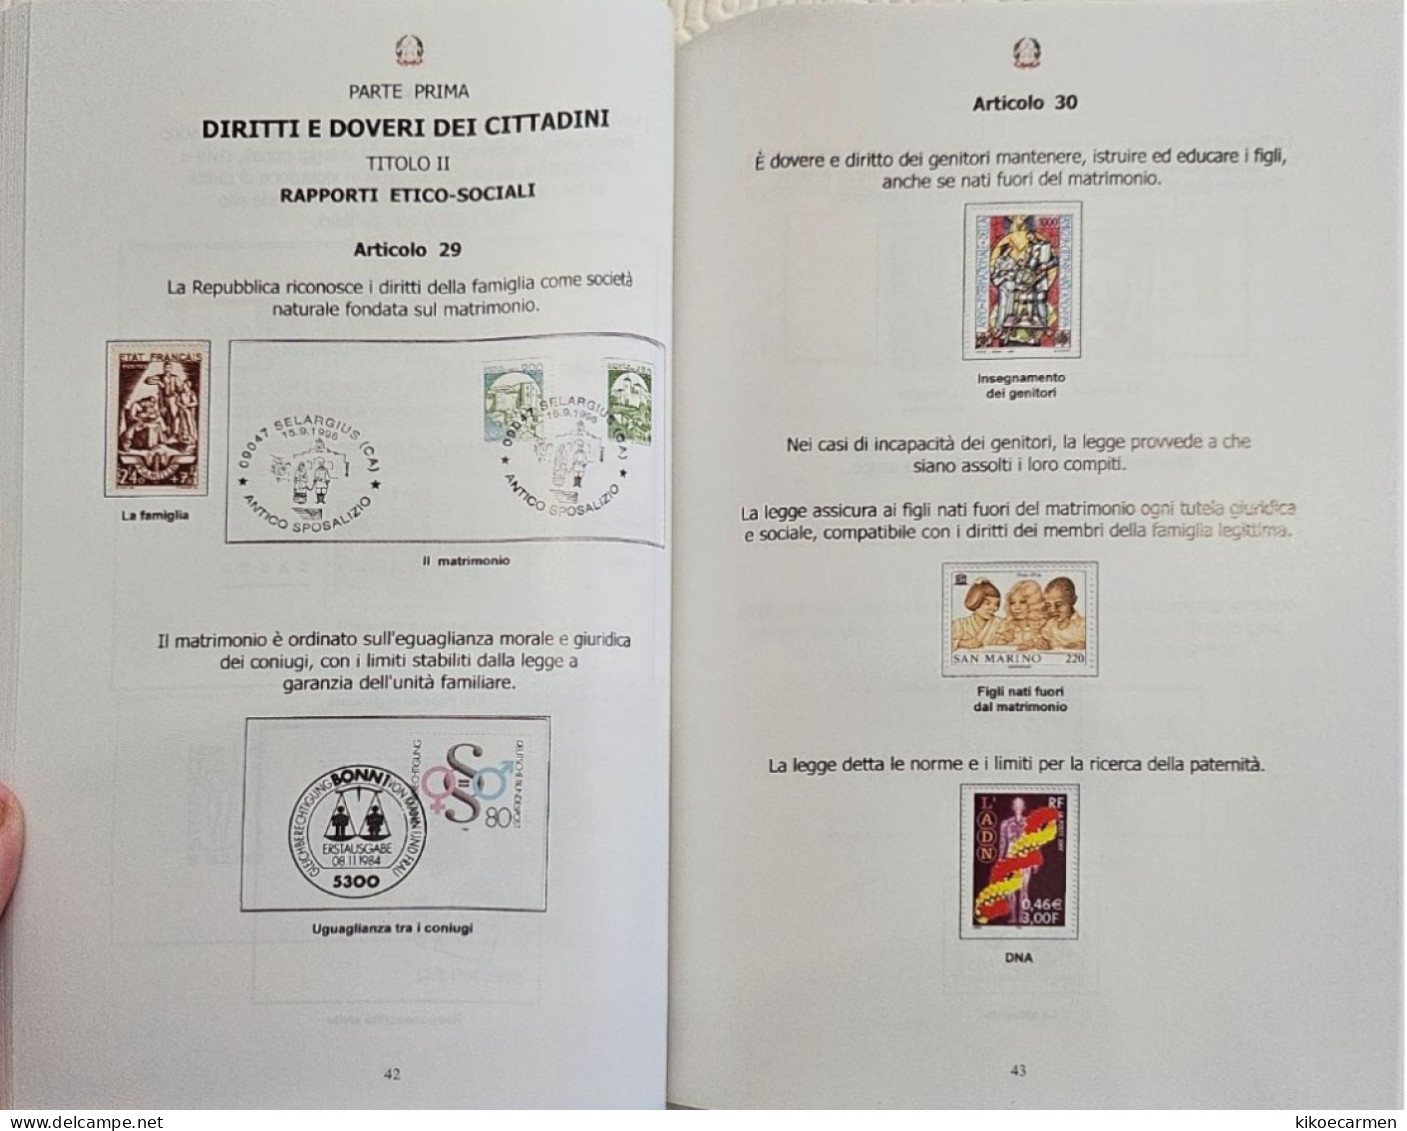 Costituzione Italiana Attraverso La Filatelia CIFT Vastophil 2014 LAW Thematic Philately Book 158 Pages Coloured - Tematica